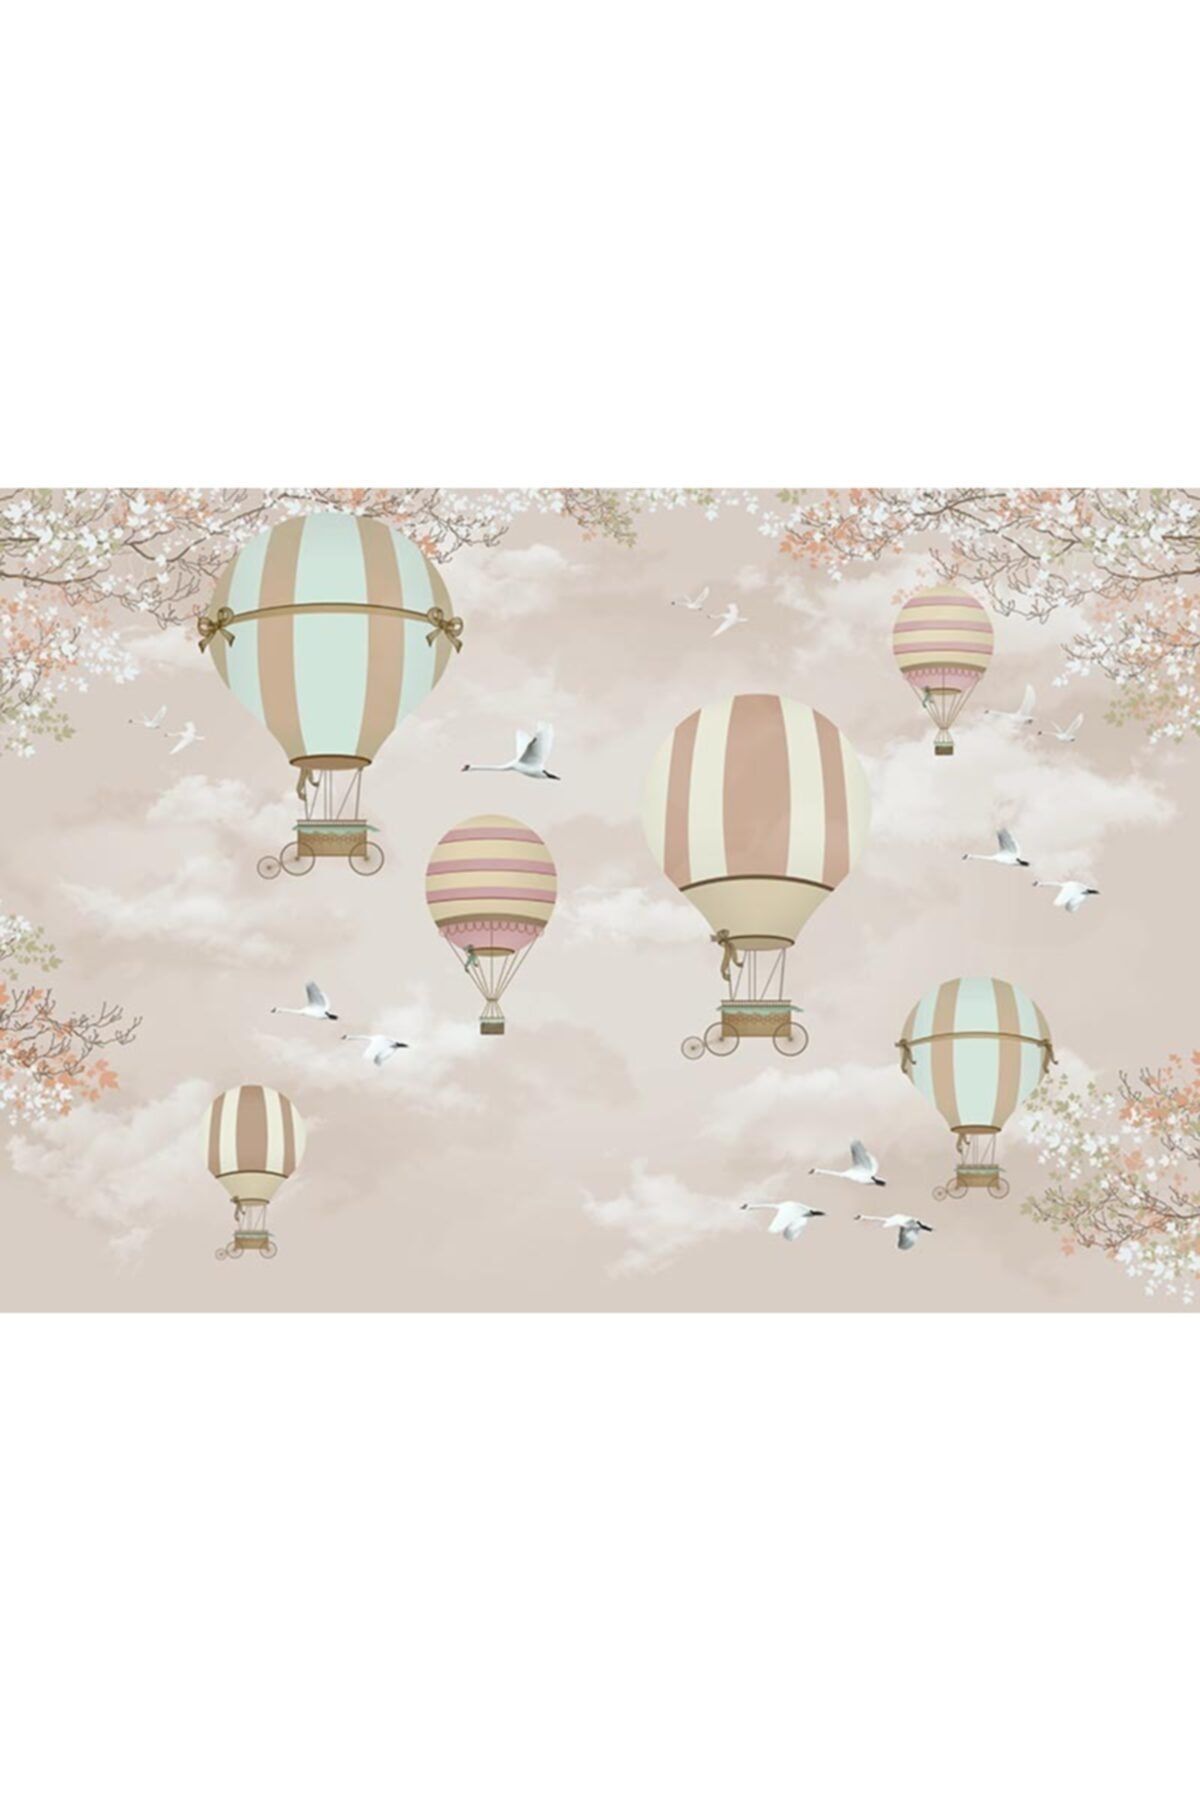 Özen Duvar Kağıtları Uçan Balonlar - Çiçekler Ve Kuşlar Çocuk Odası Duvar Kağıdı